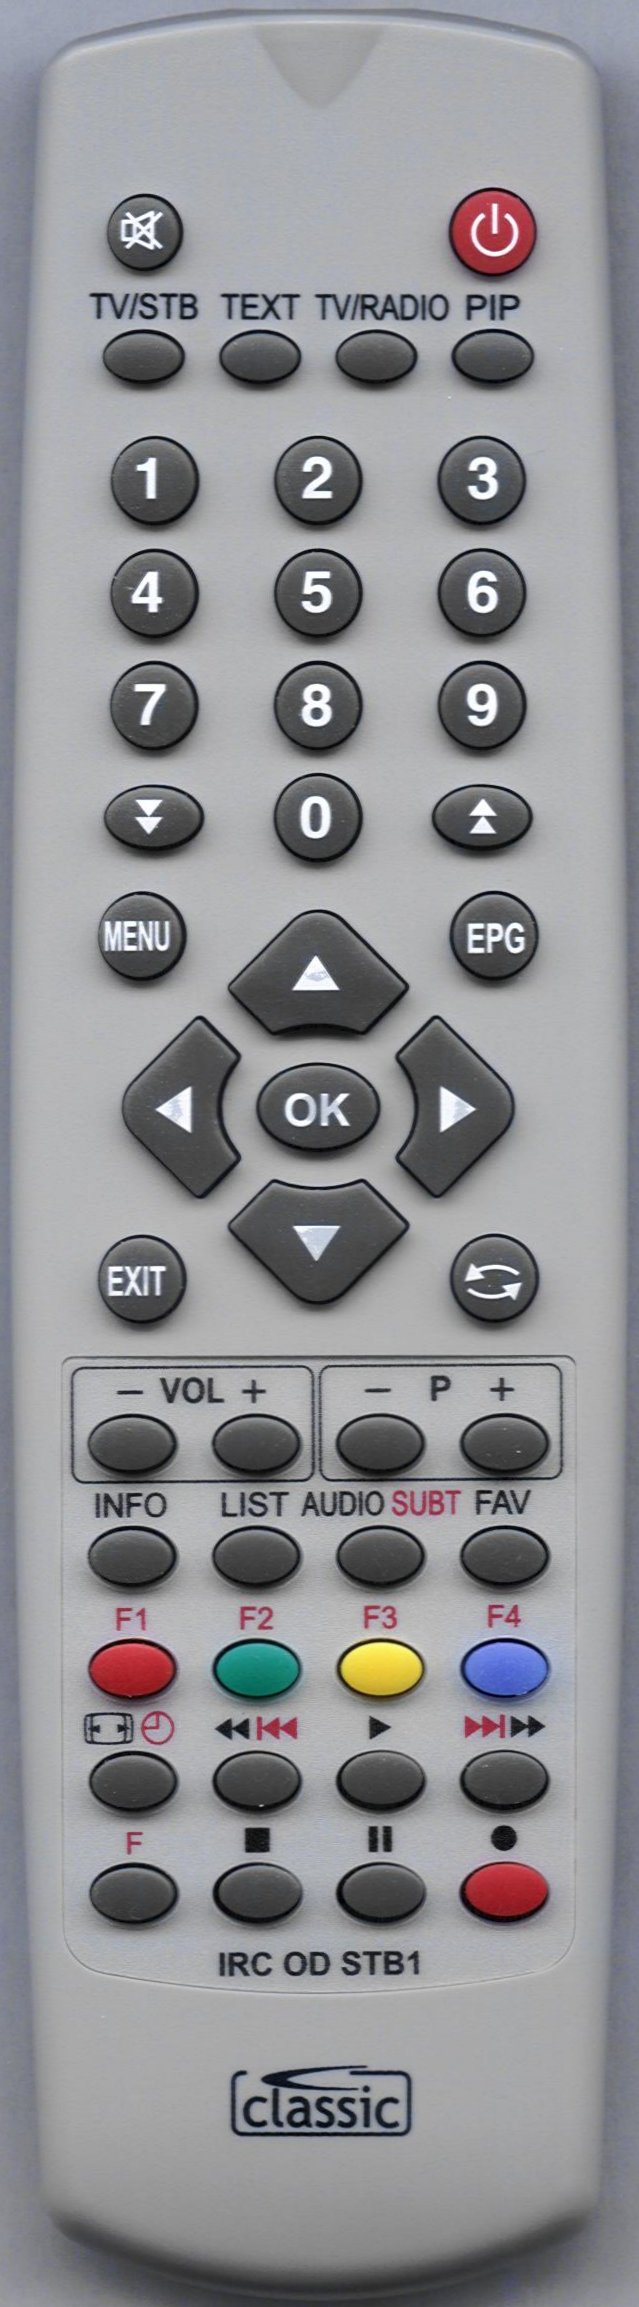 HUMAX 01400-2370 Remote Control